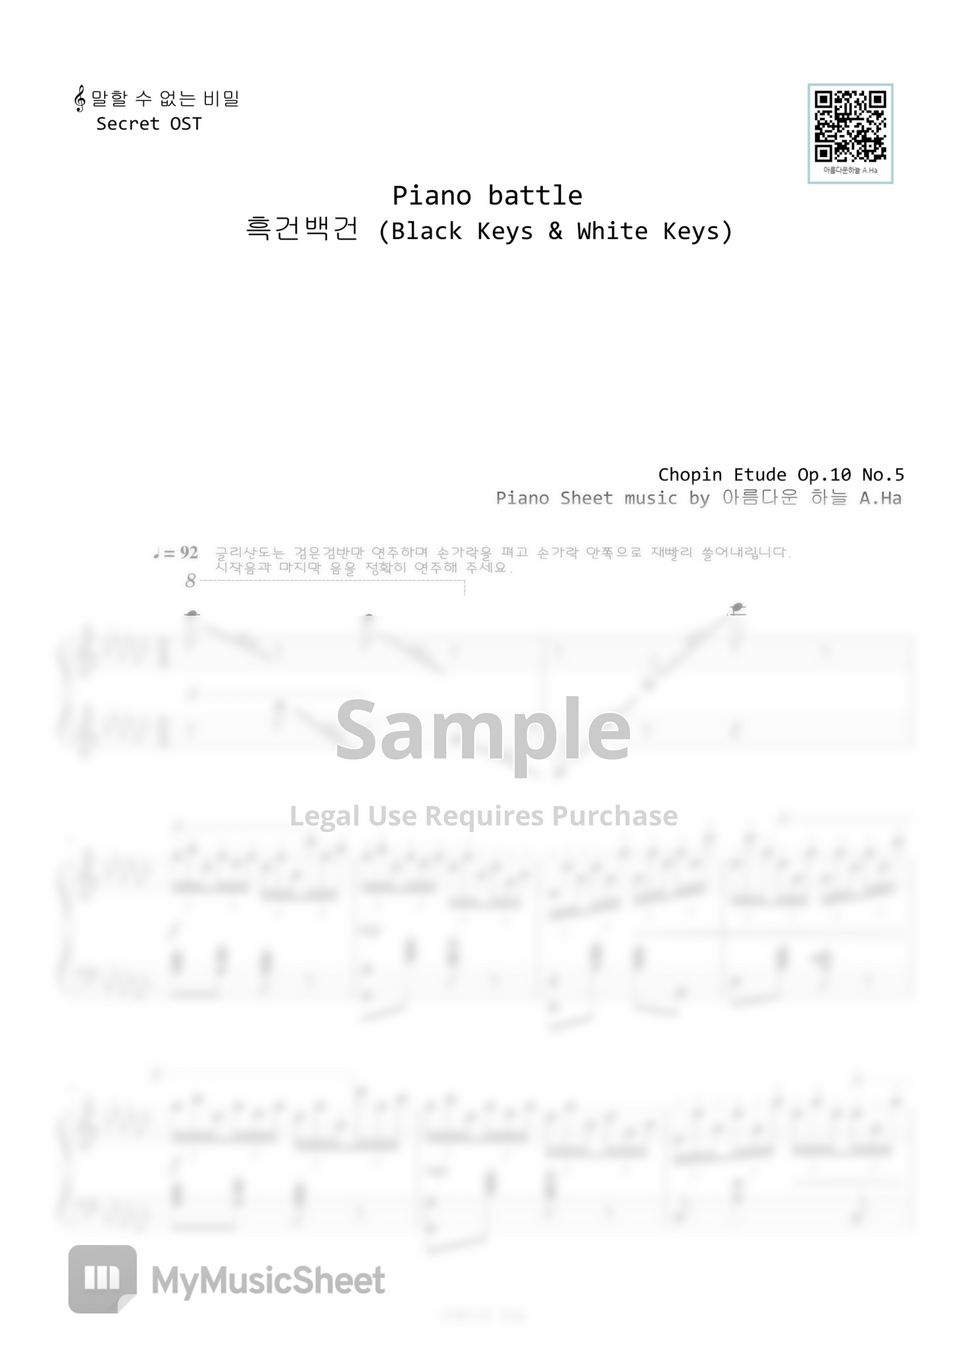 Jay Chou - 말할 수 없는 비밀 Secret  OST Piano battle (Original Key) by A.Ha